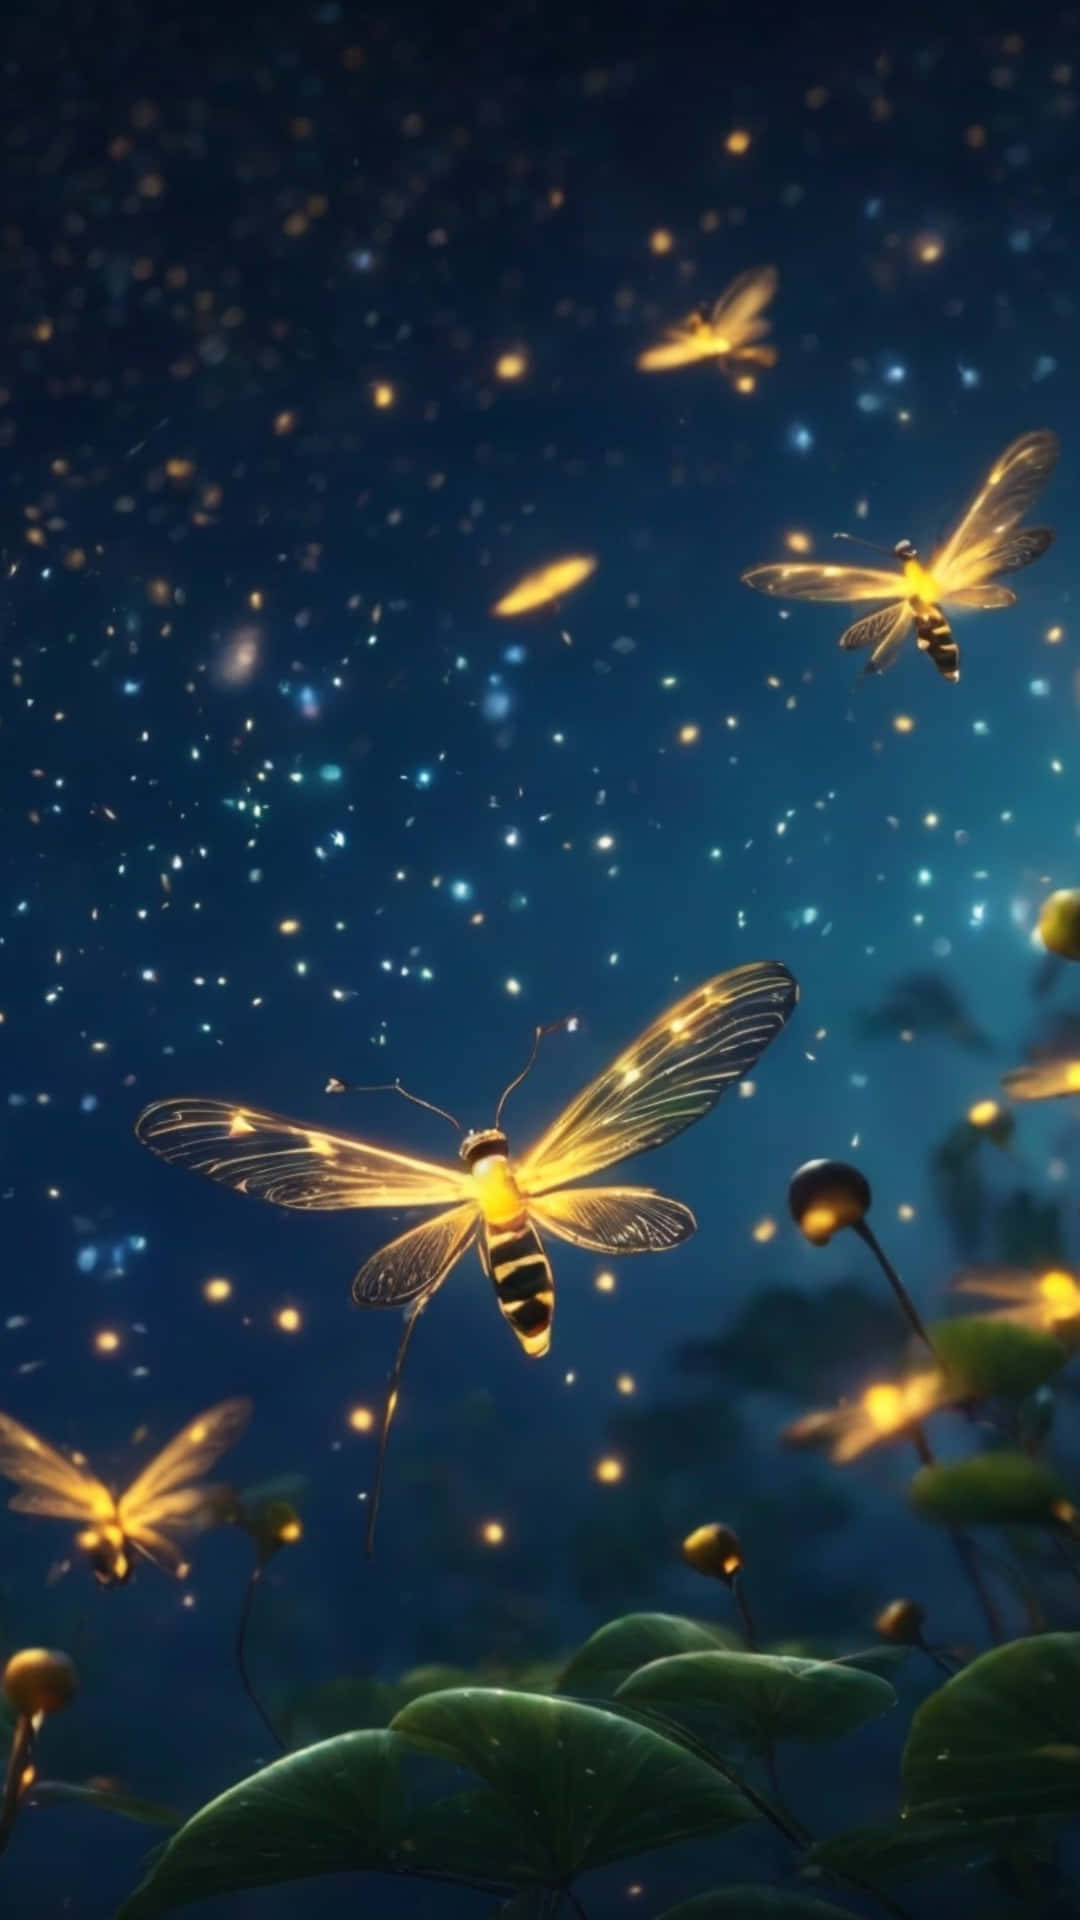 Enchanted Night Lightning Bugs Wallpaper